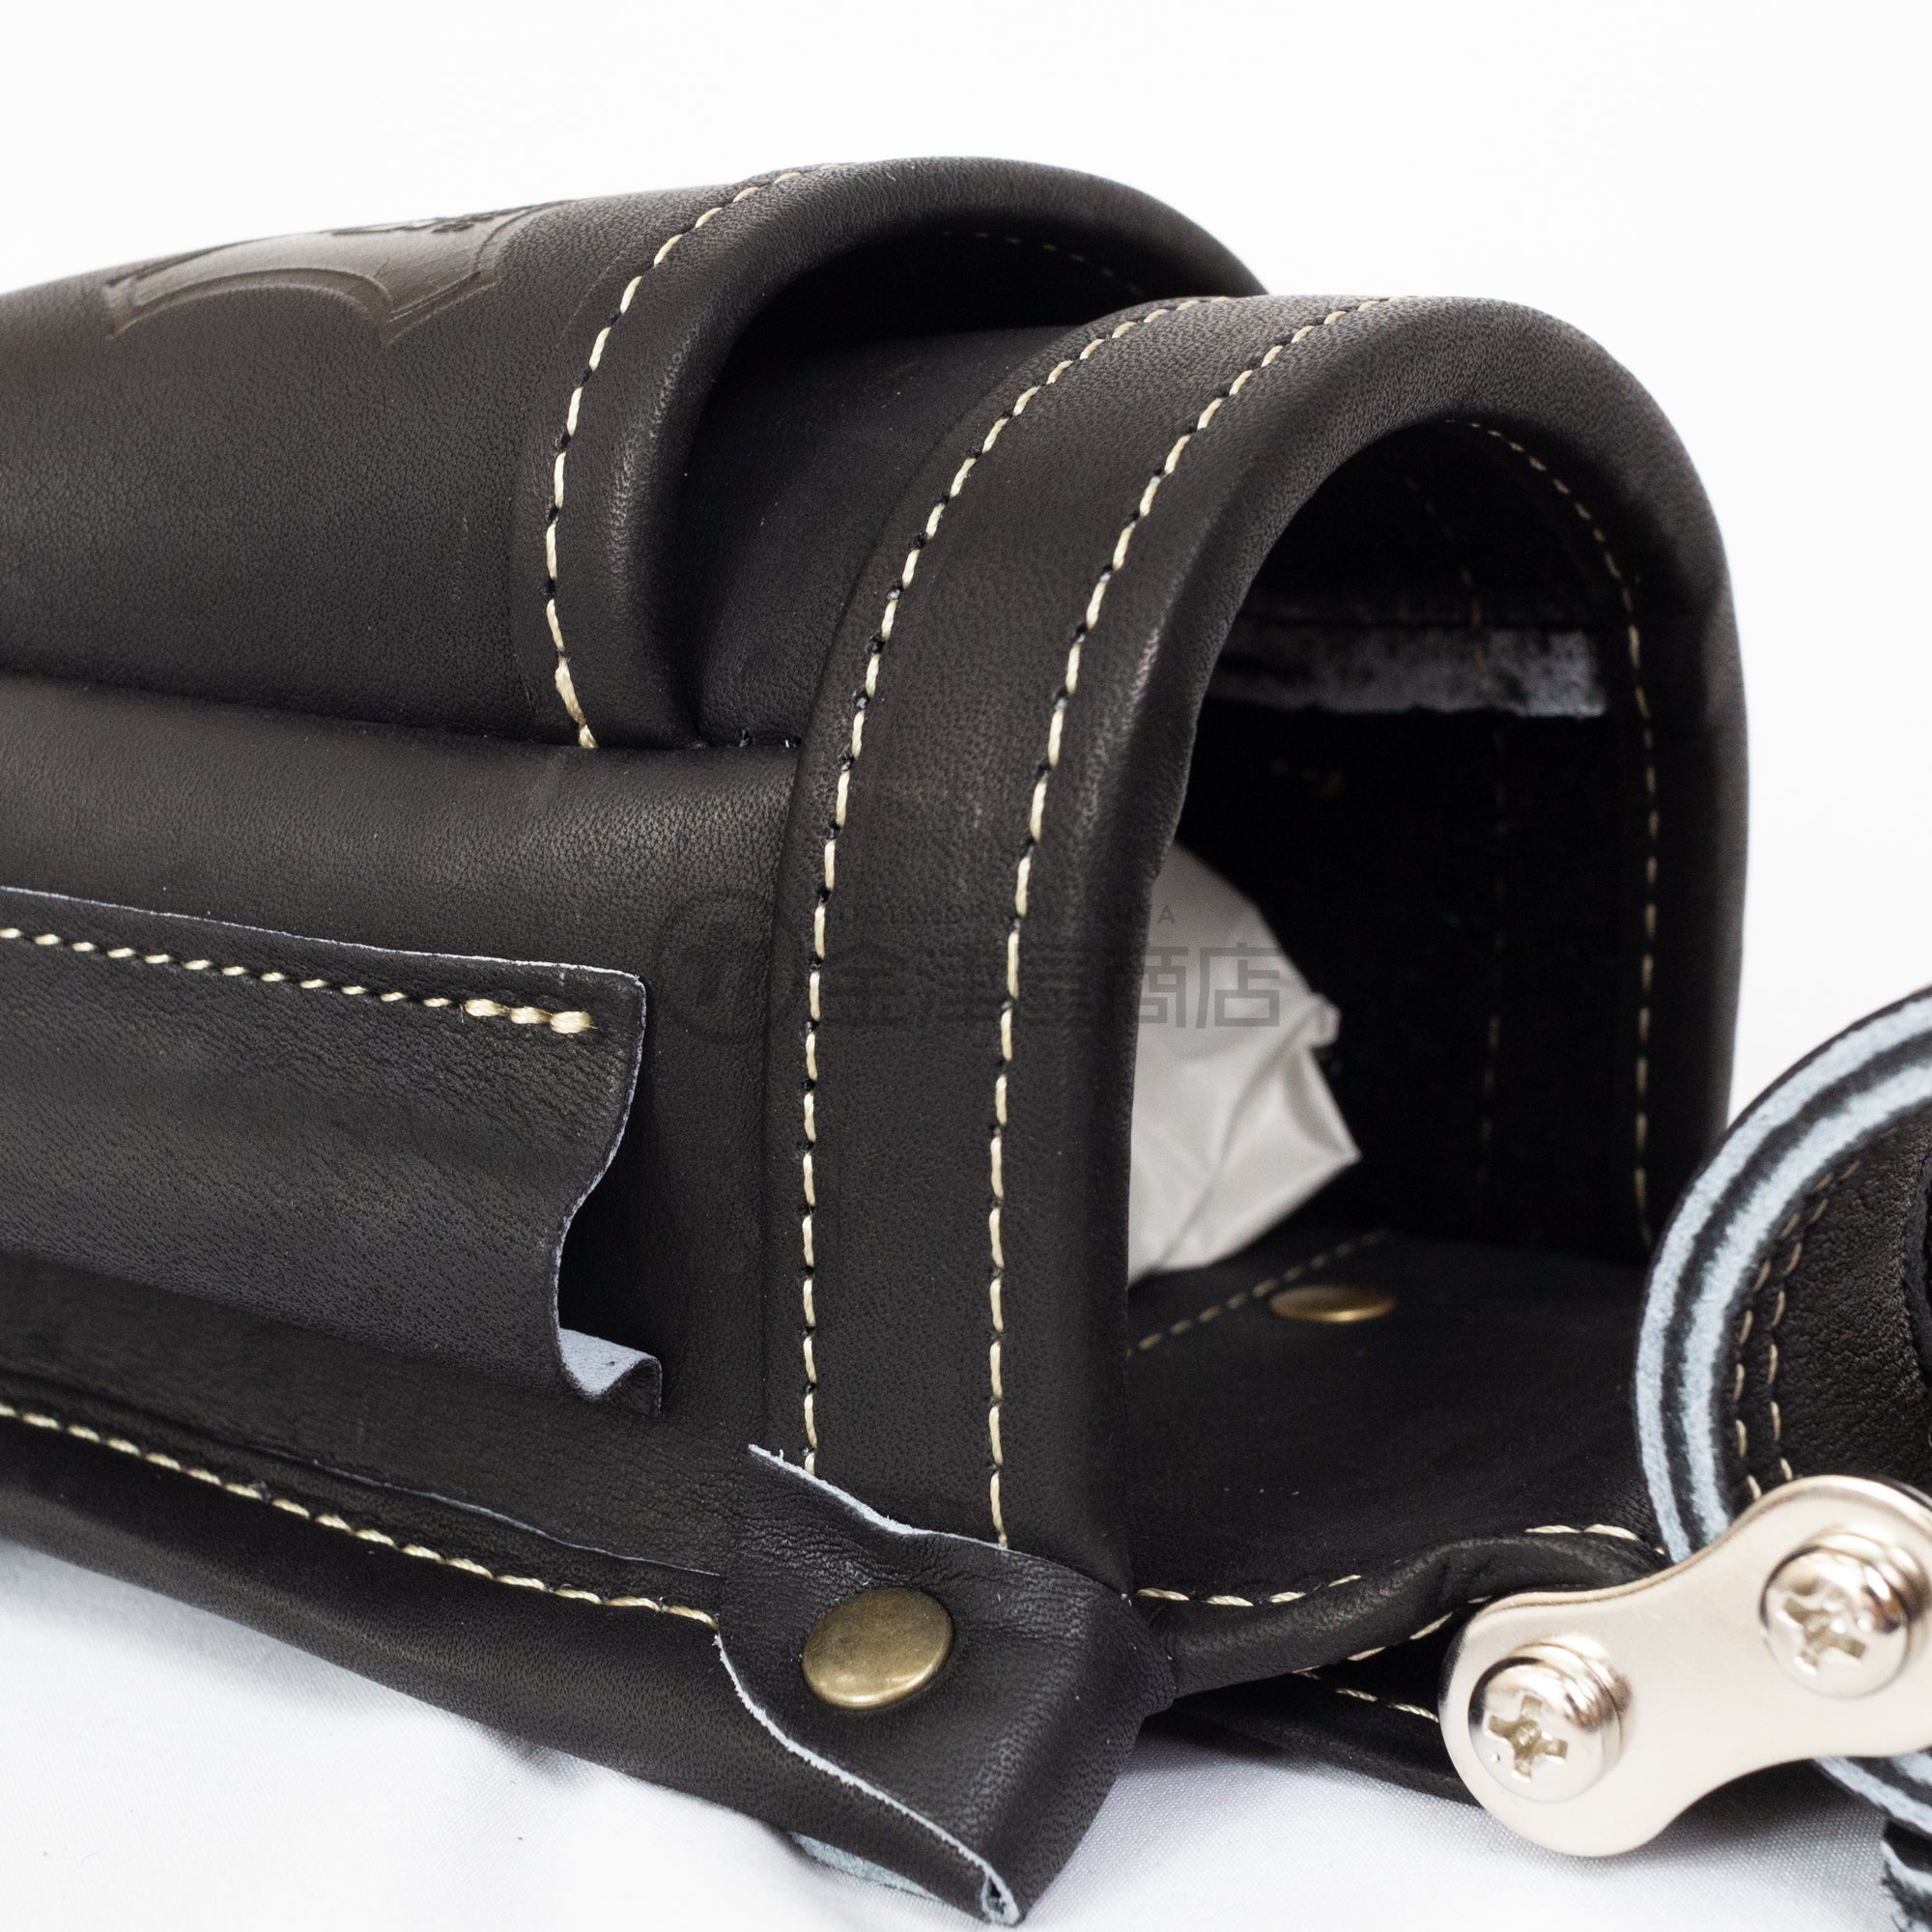 ニックス チェーン式最高級硬式グローブ革小物腰袋(ブラック) KGB-201VADX-